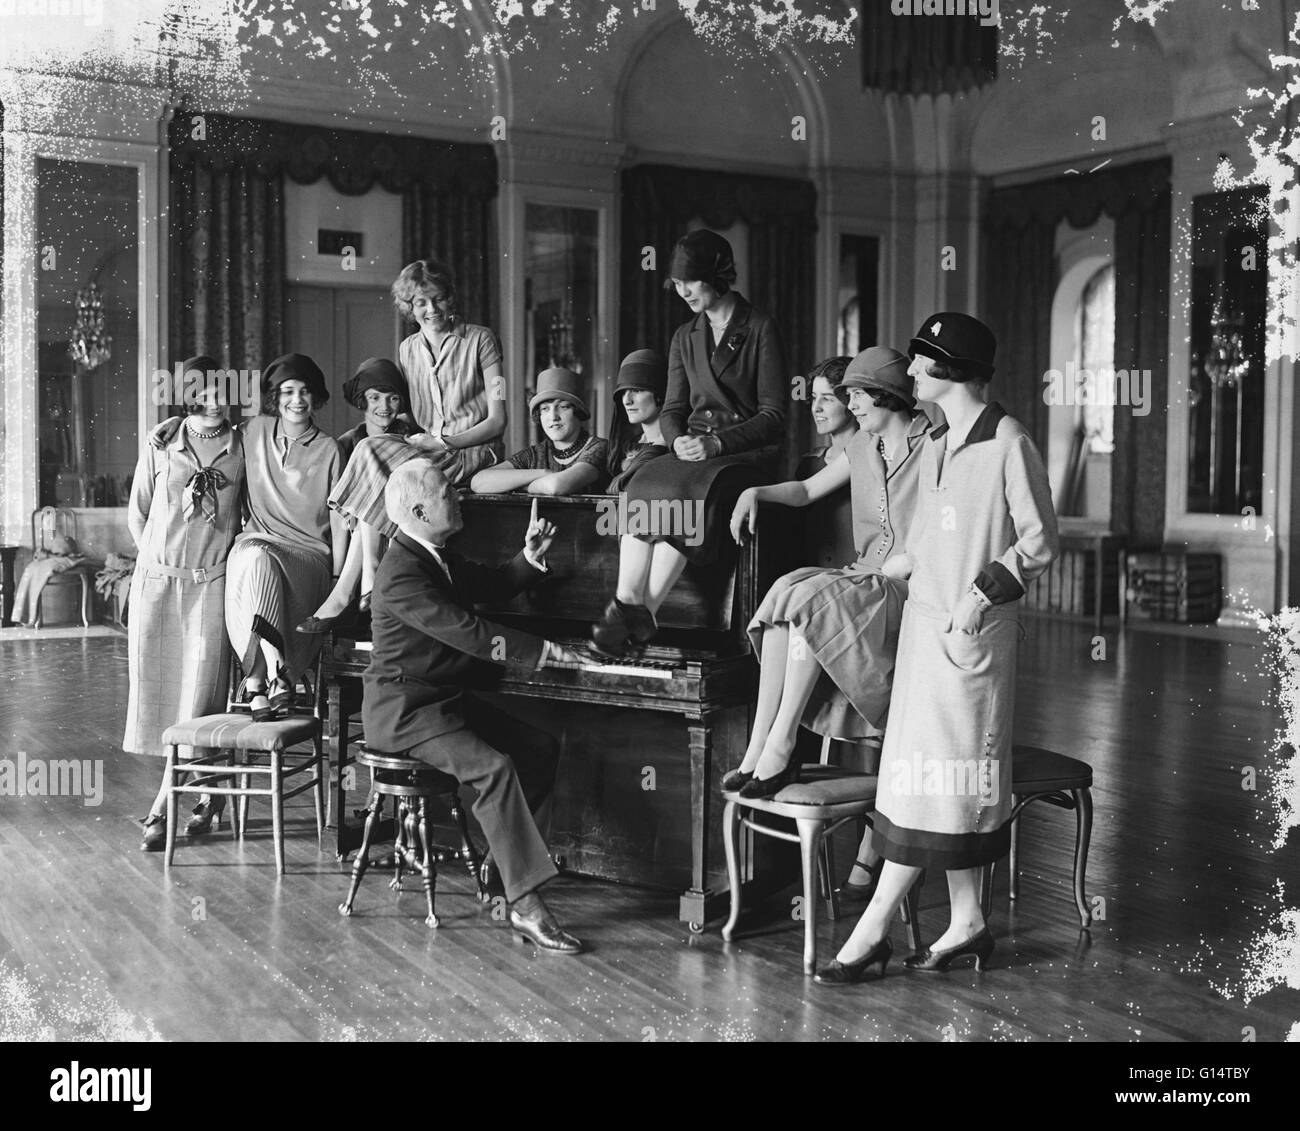 Washington-Debütantinnen unter der Leitung von Donald McDonald Proben für die nutzen-Musical-Komödie "Der Talk of the Town", die sie in einem Theater in Washington, D.C. 25. März 1925 durchführen wird. Stockfoto